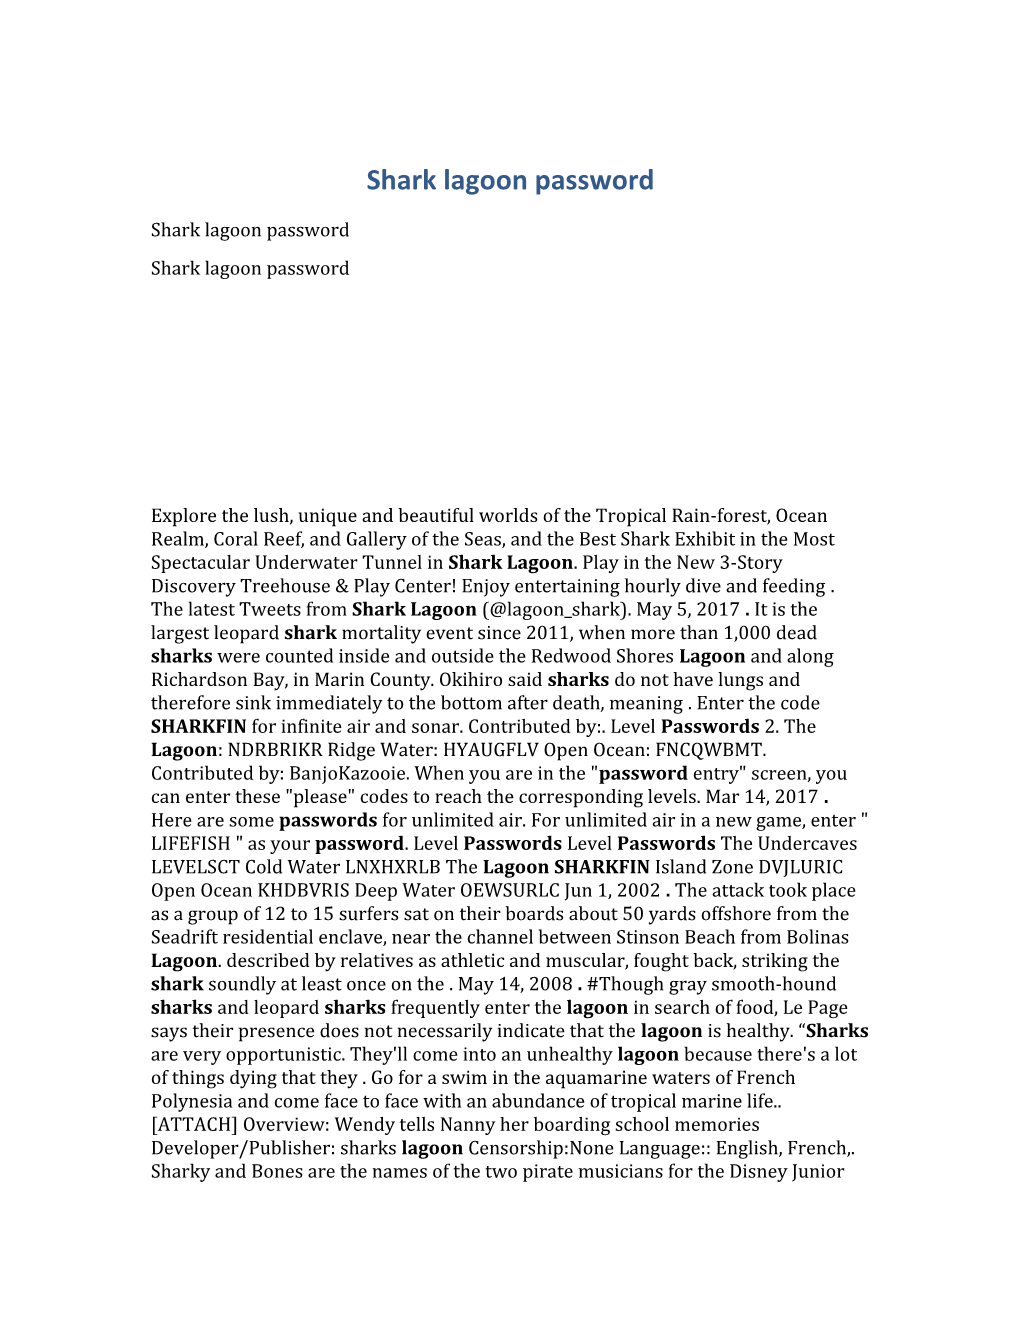 Shark Lagoon Password